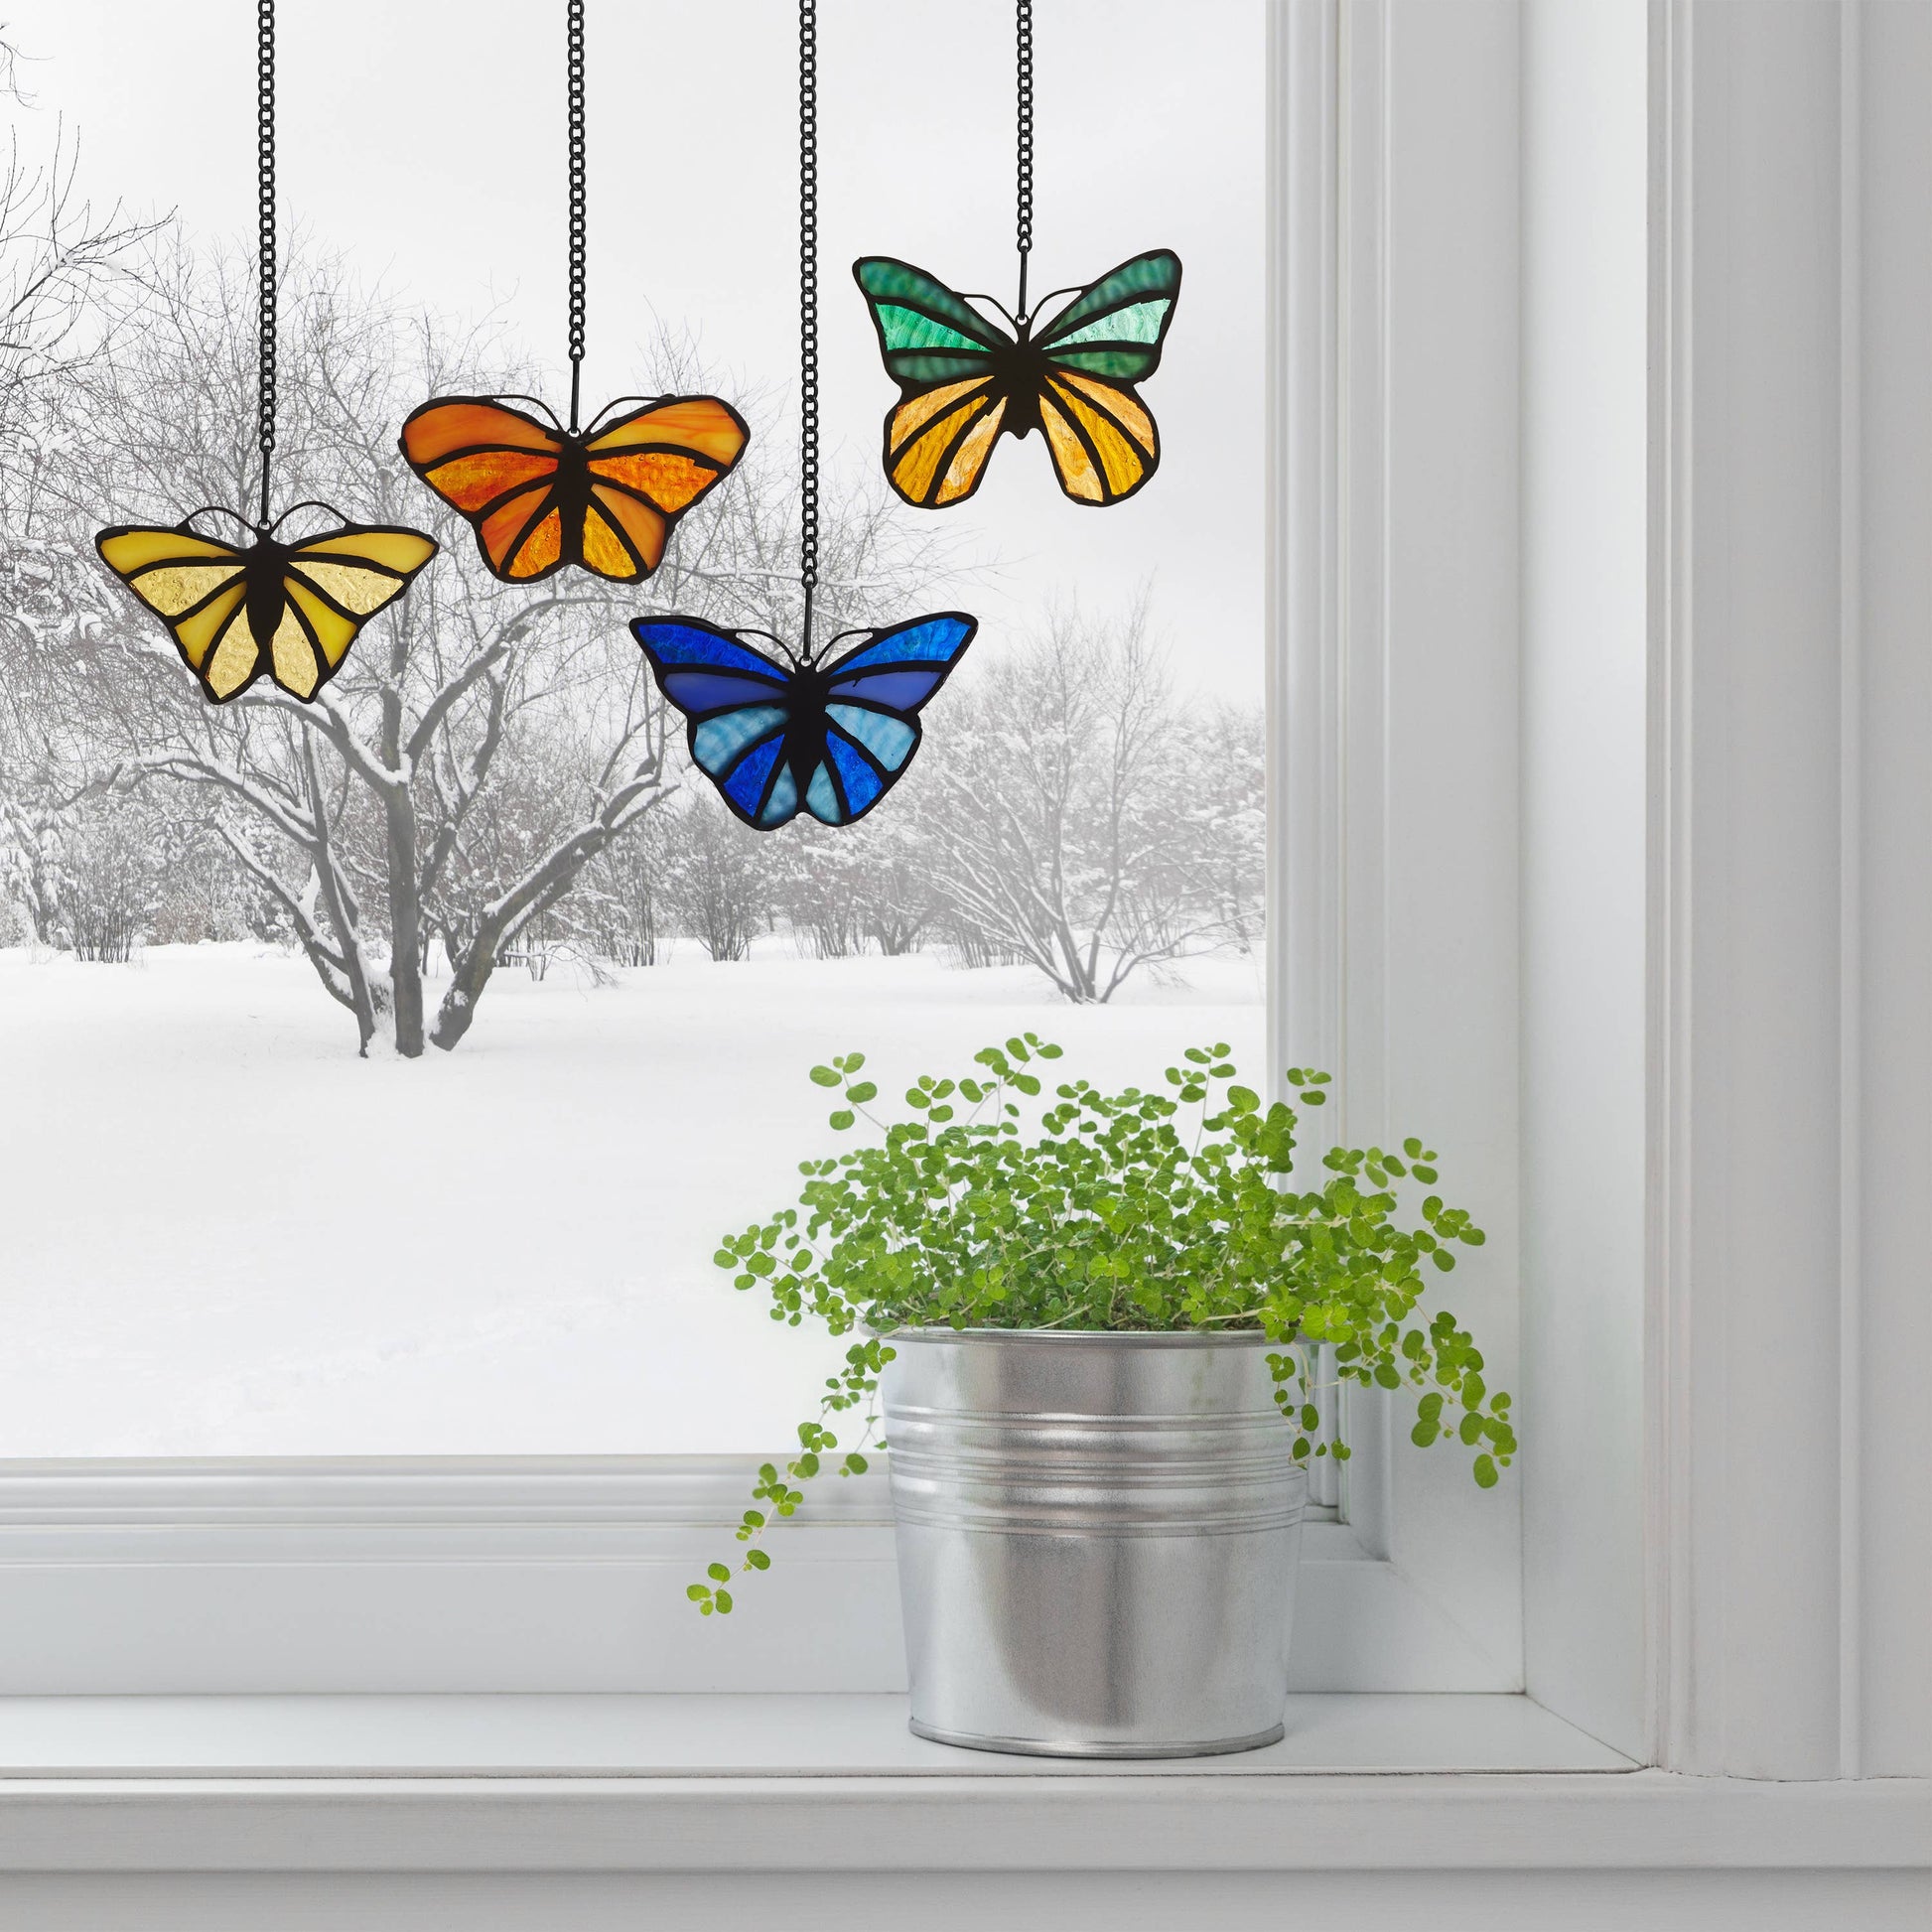 Mini Butterfly Stained Glass Window Panels - La De Da